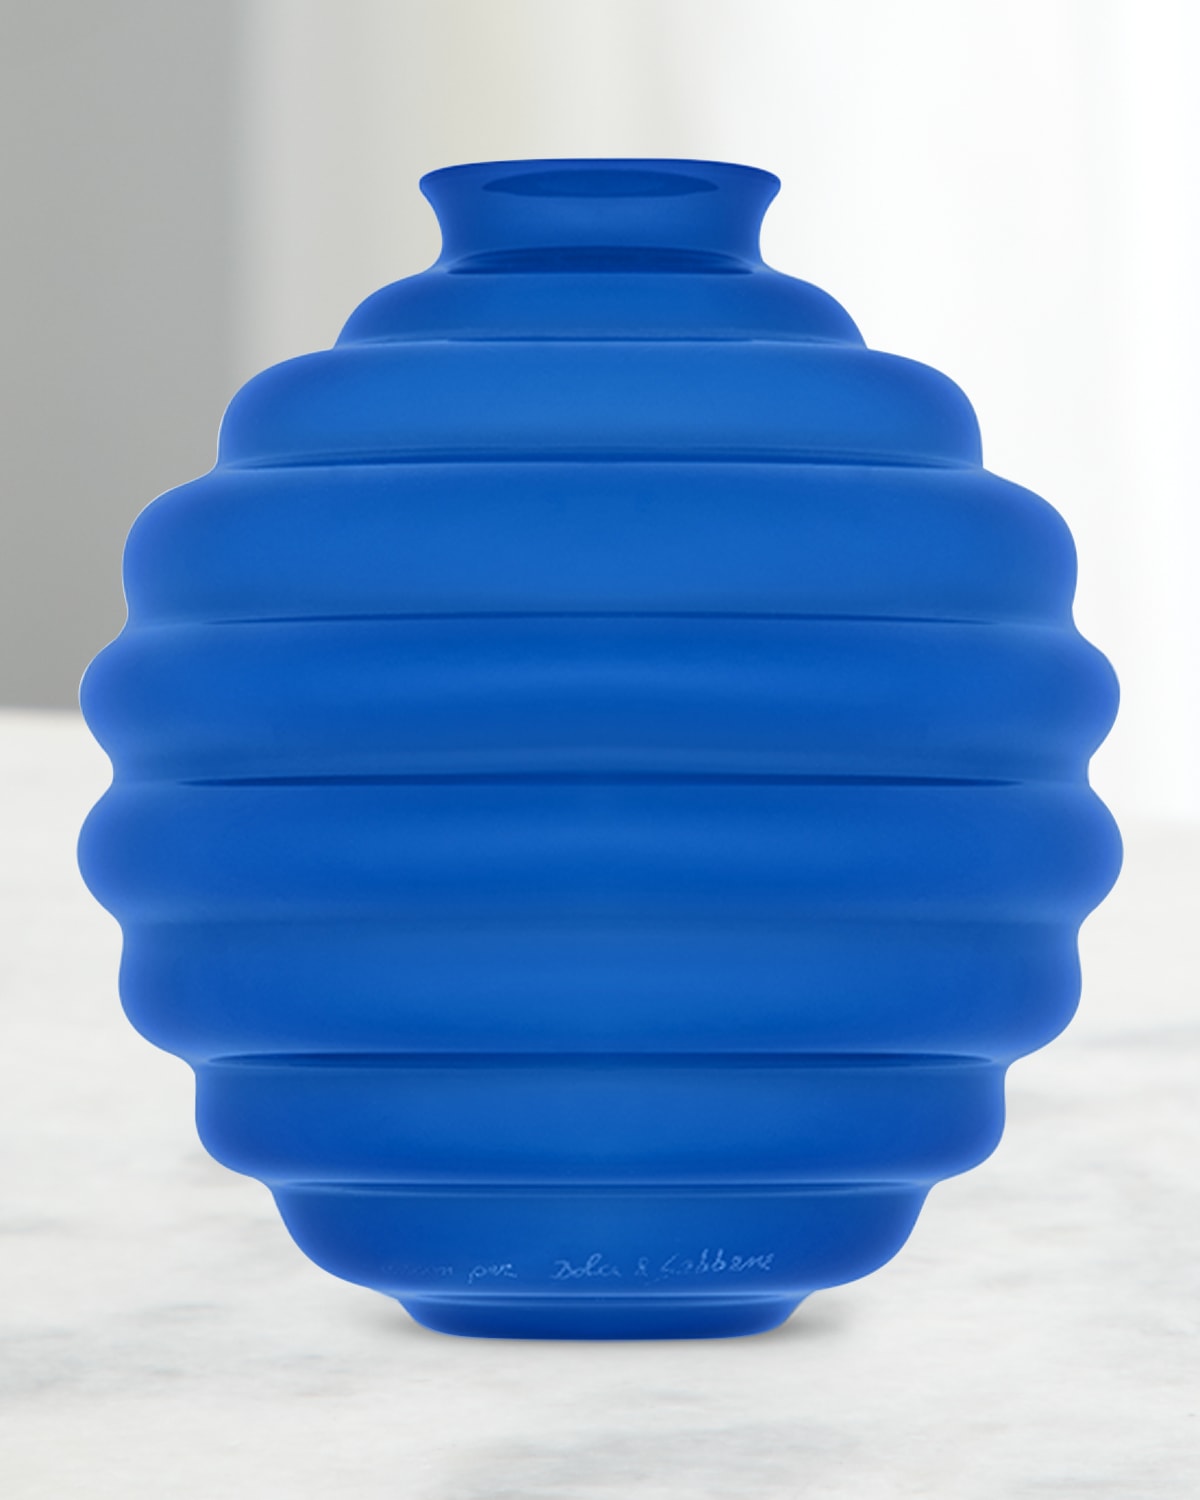 Carretto Venini Small Glass Vase, 7.1"